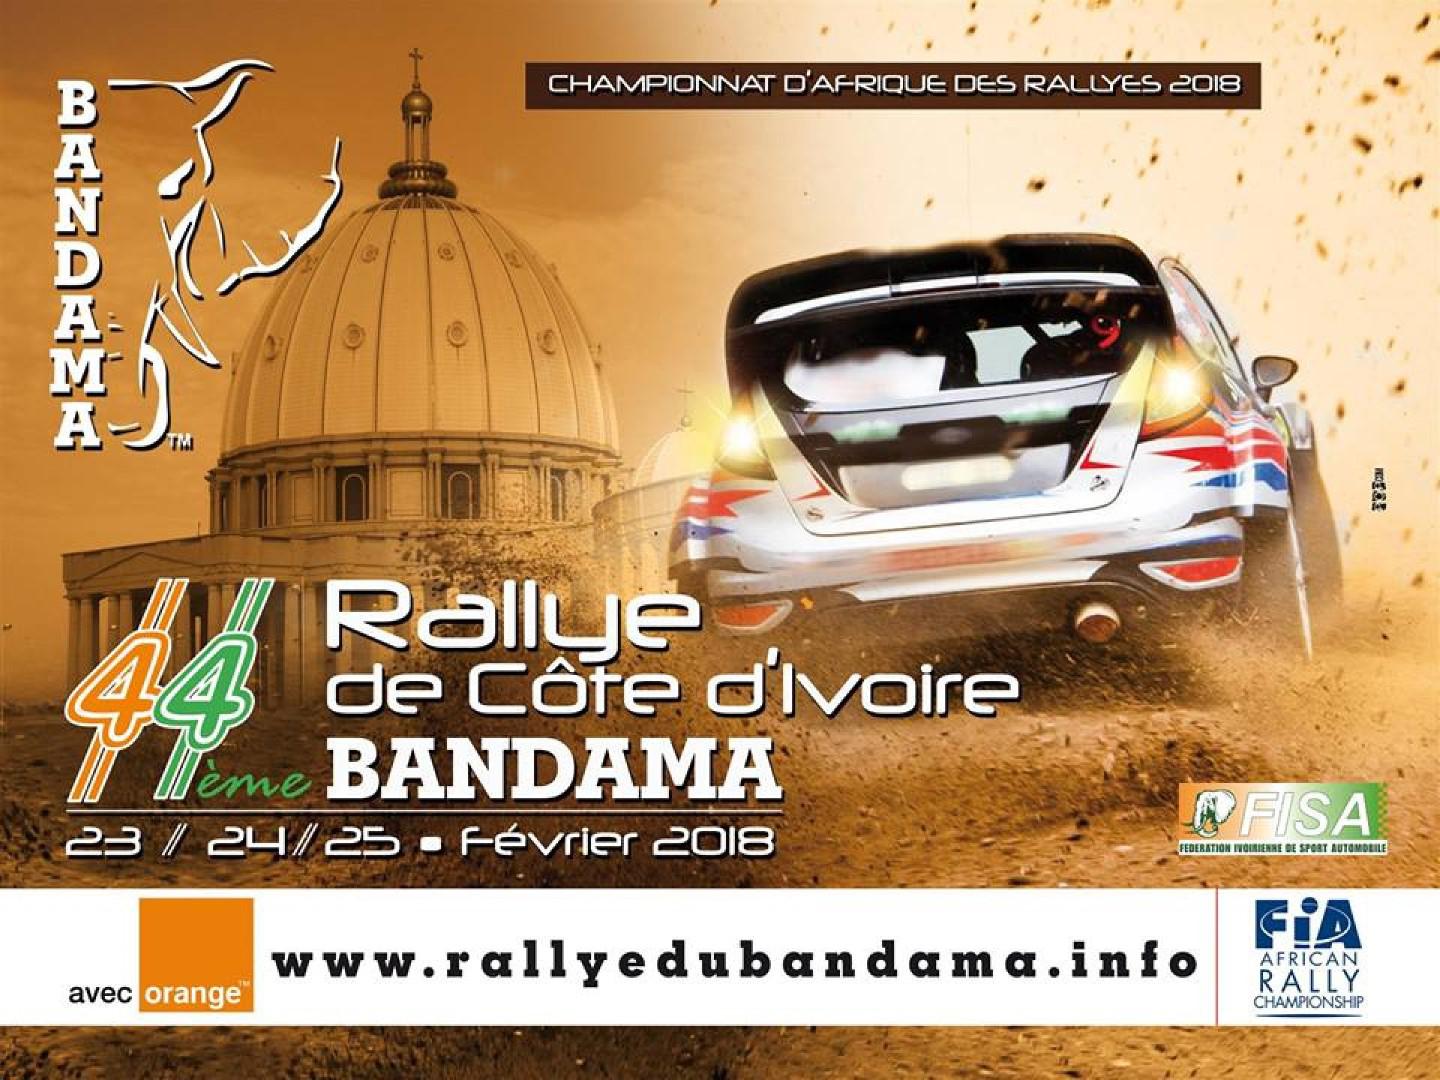 Rallye du Bandama 2018 : Liste des engagés avec Stéphane Peterhansel !